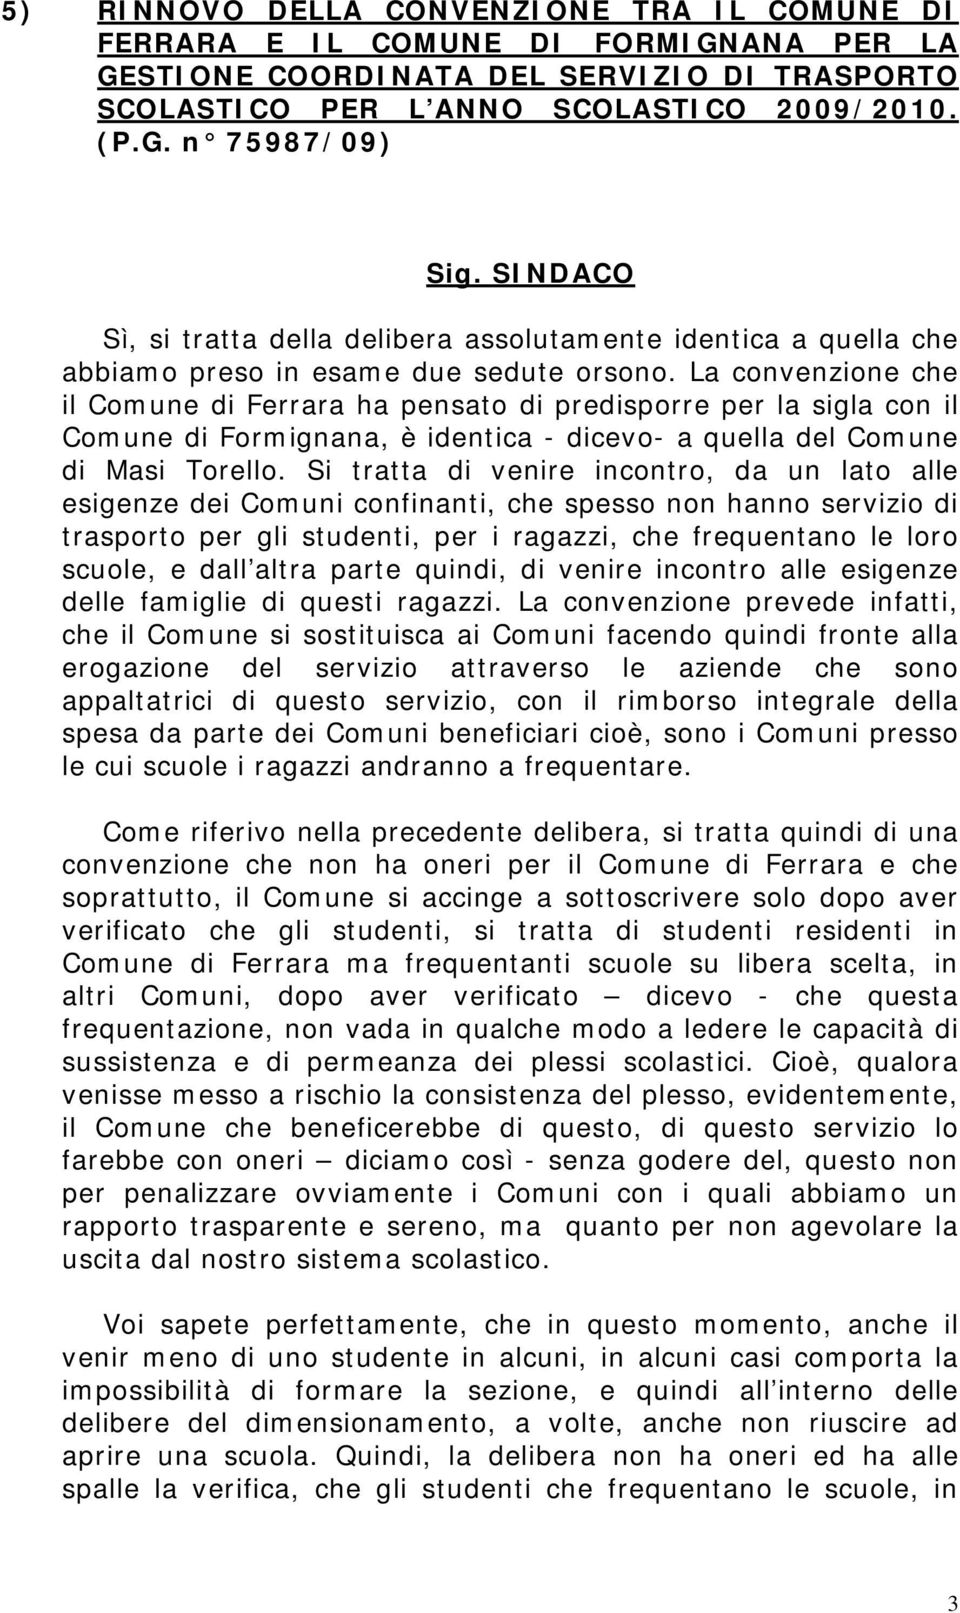 La convenzione che il Comune di Ferrara ha pensato di predisporre per la sigla con il Comune di Formignana, è identica - dicevo- a quella del Comune di Masi Torello.